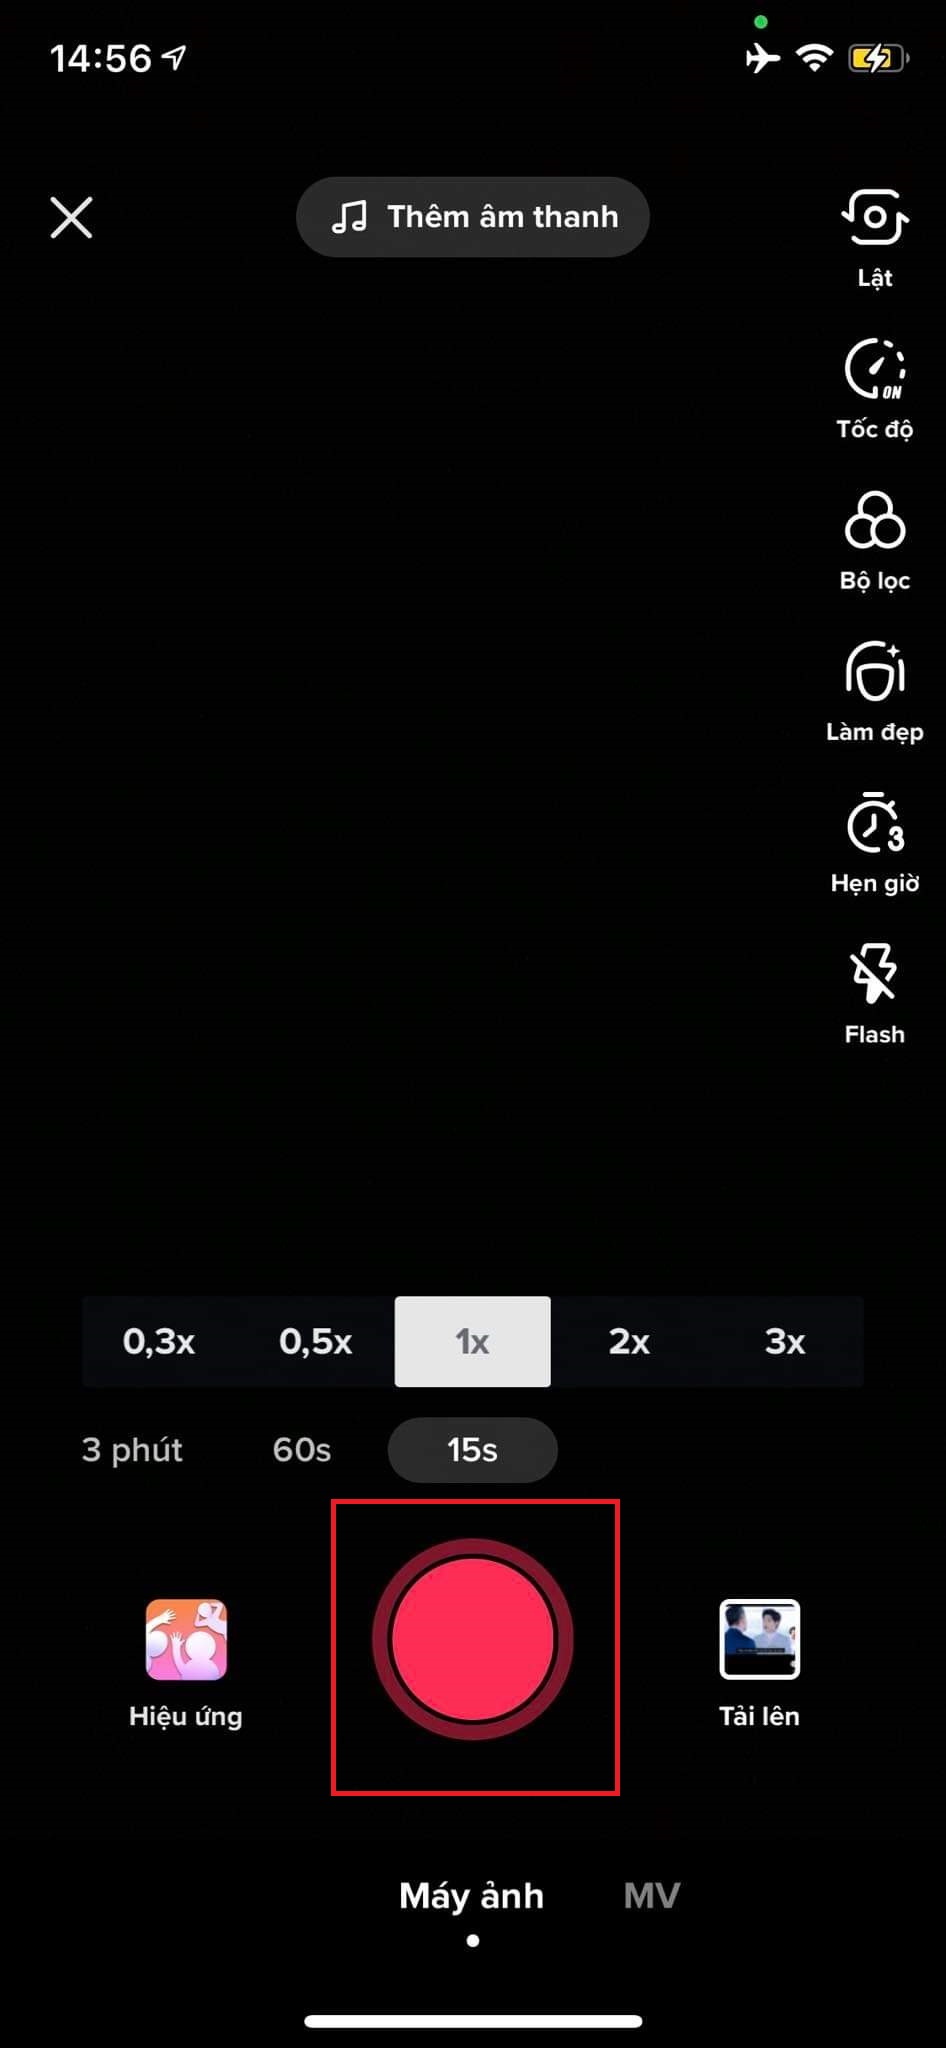 Quay video bằng cách nhấn và giữ một nút lớn màu đỏ và (không giống như Snapchat), bạn có thể chỉnh sửa các video đã quay sau đó. 